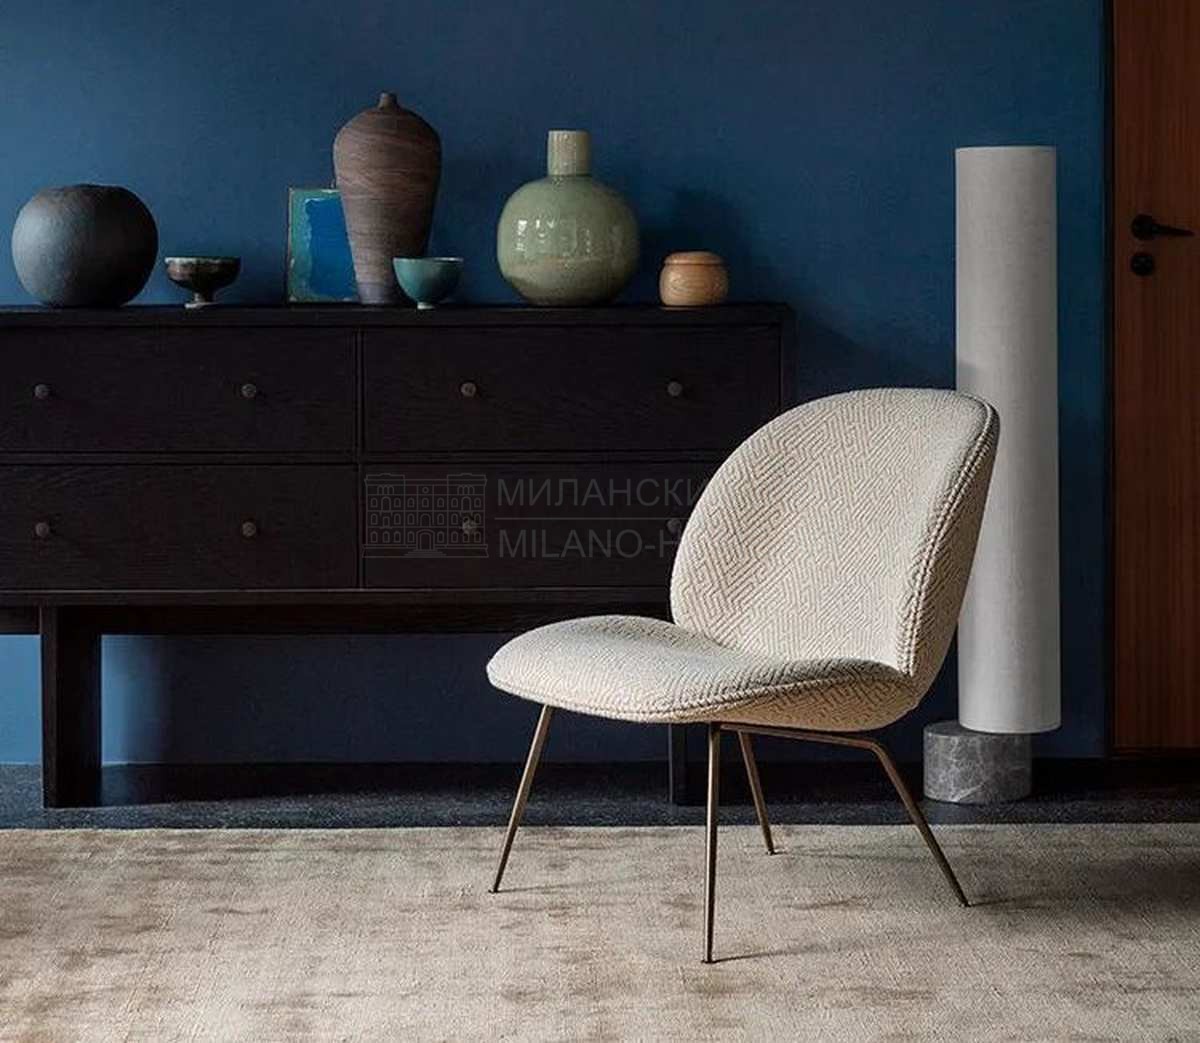 Кресло Beetle lounge chair из Дании фабрики GUBI